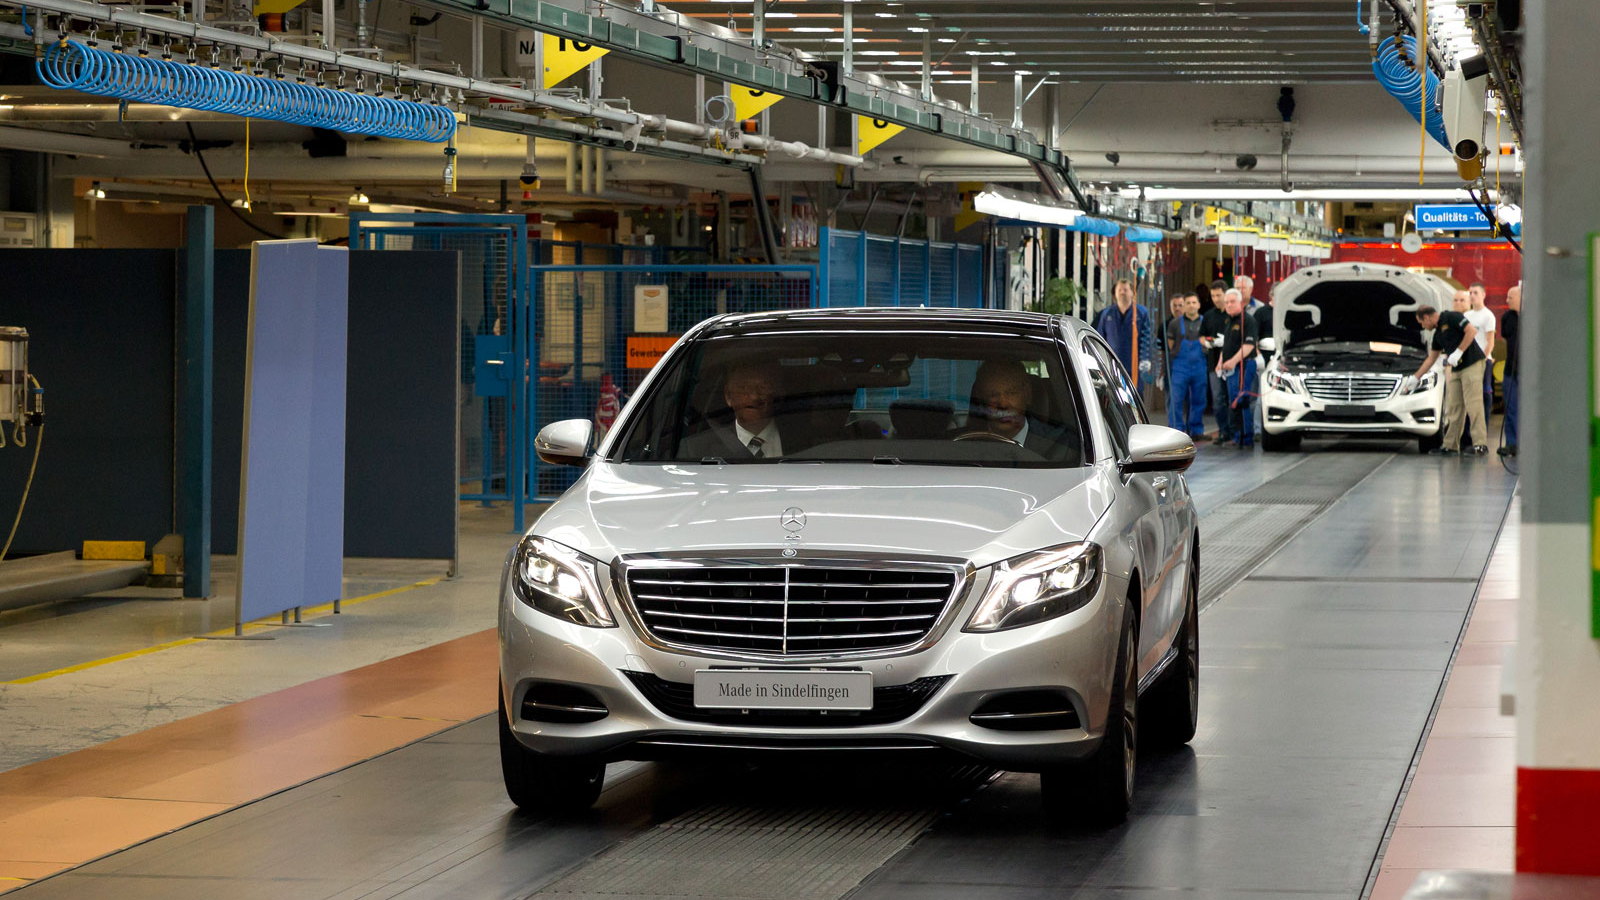 2014 Mercedes-Benz S Class production in Sindelfingen, Germany